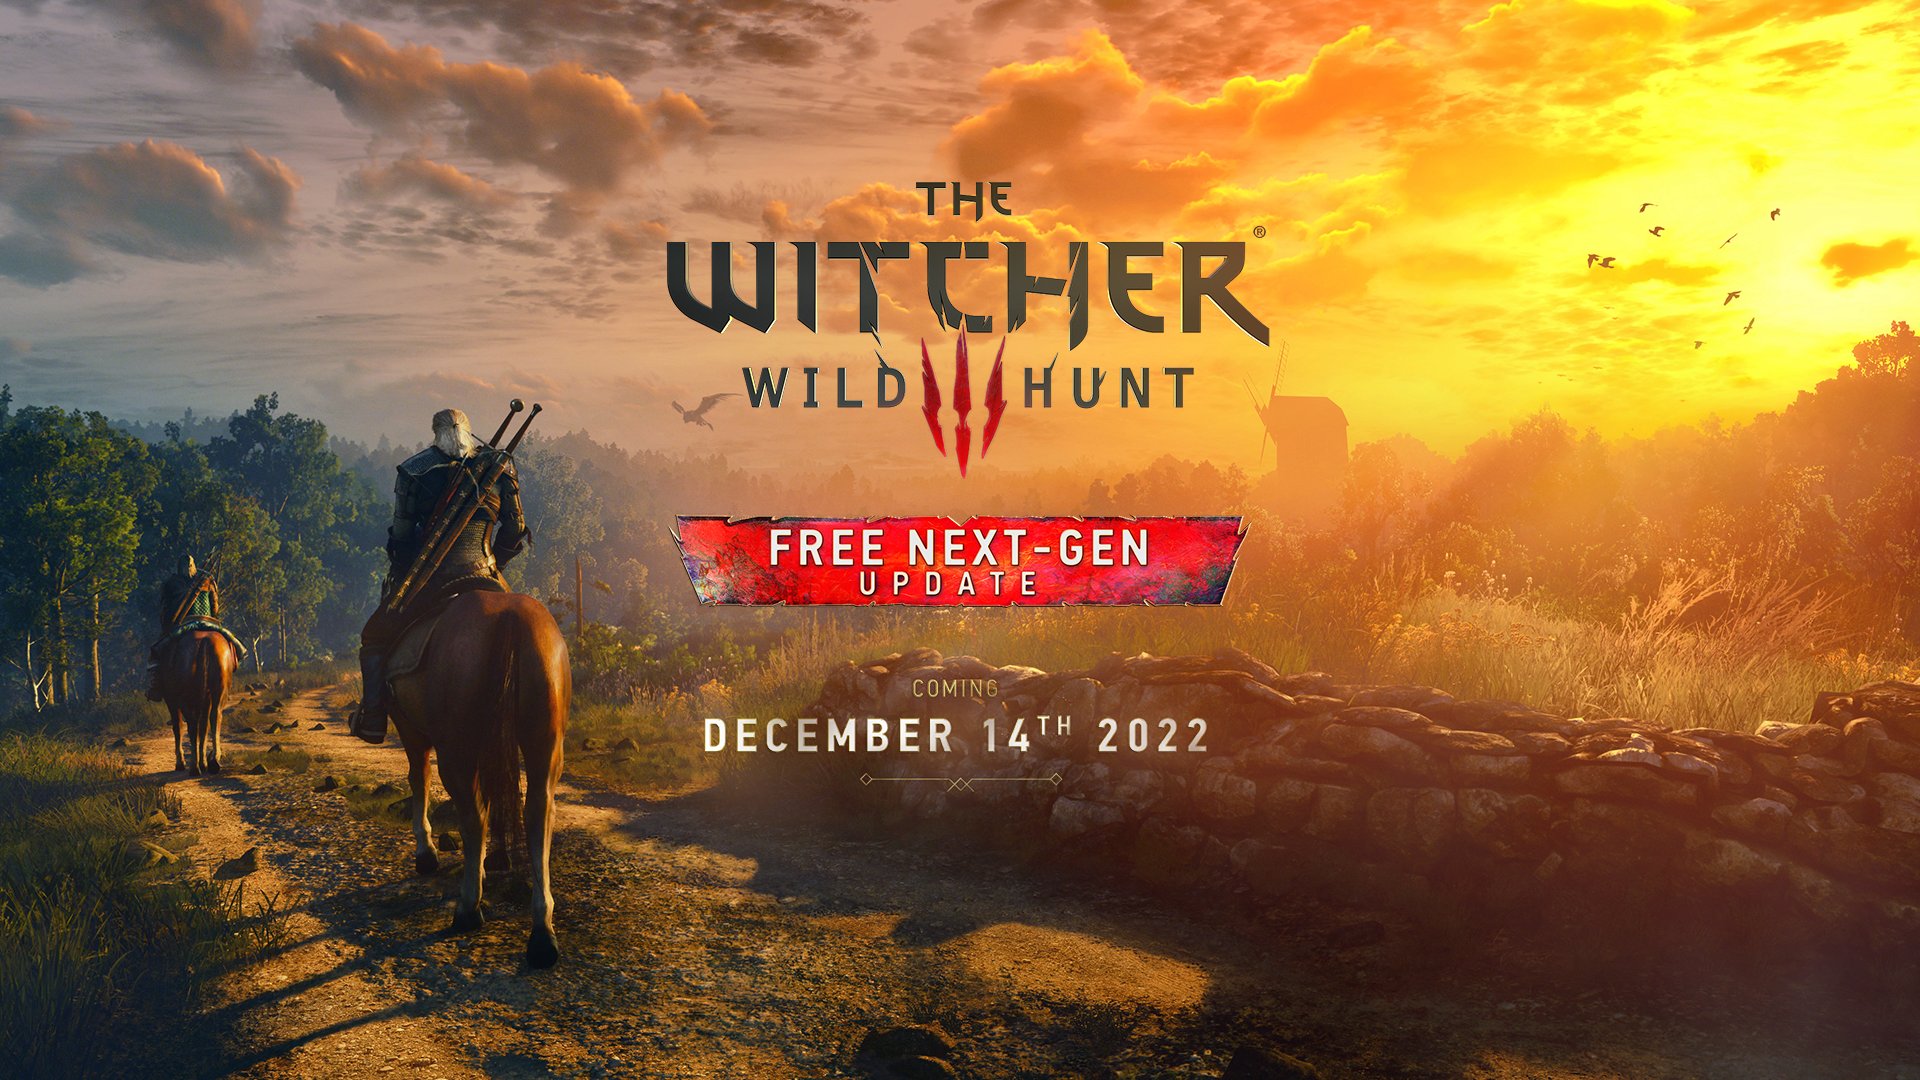 Что известно о версии The Witcher 3 нового поколения - ее релиз 14 декабря: с сайта NEWXBOXONE.RU